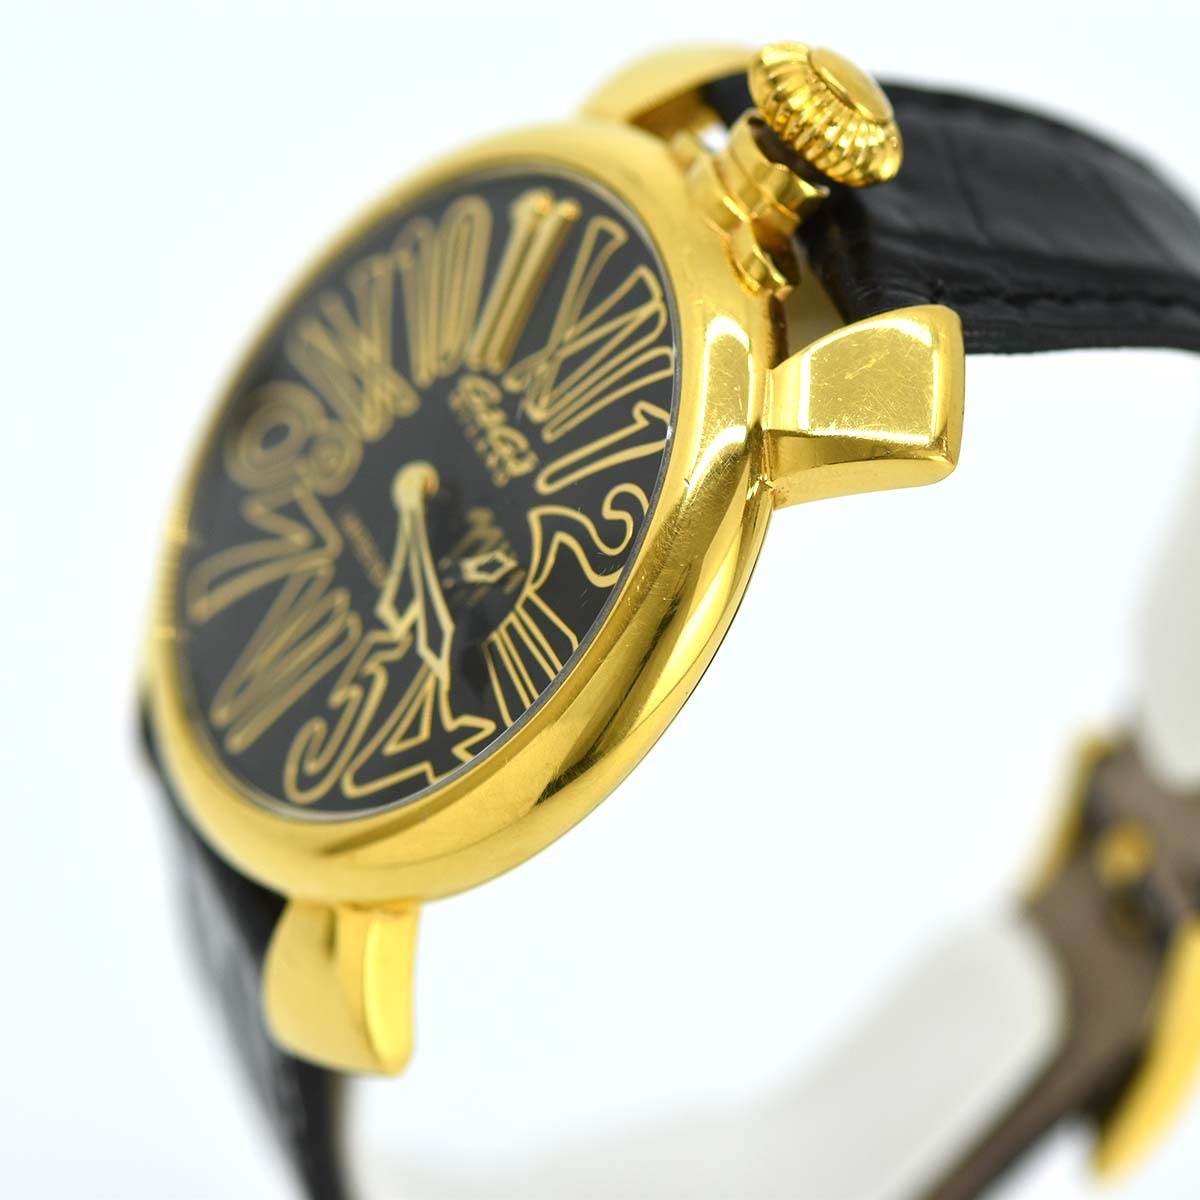  ломбард наручные часы GaGa MILANO GaGa Milano nei Maar модель ограниченный выпуск 111 1 шт. 5083.NJ.01smoseko кварц ... ломбард 